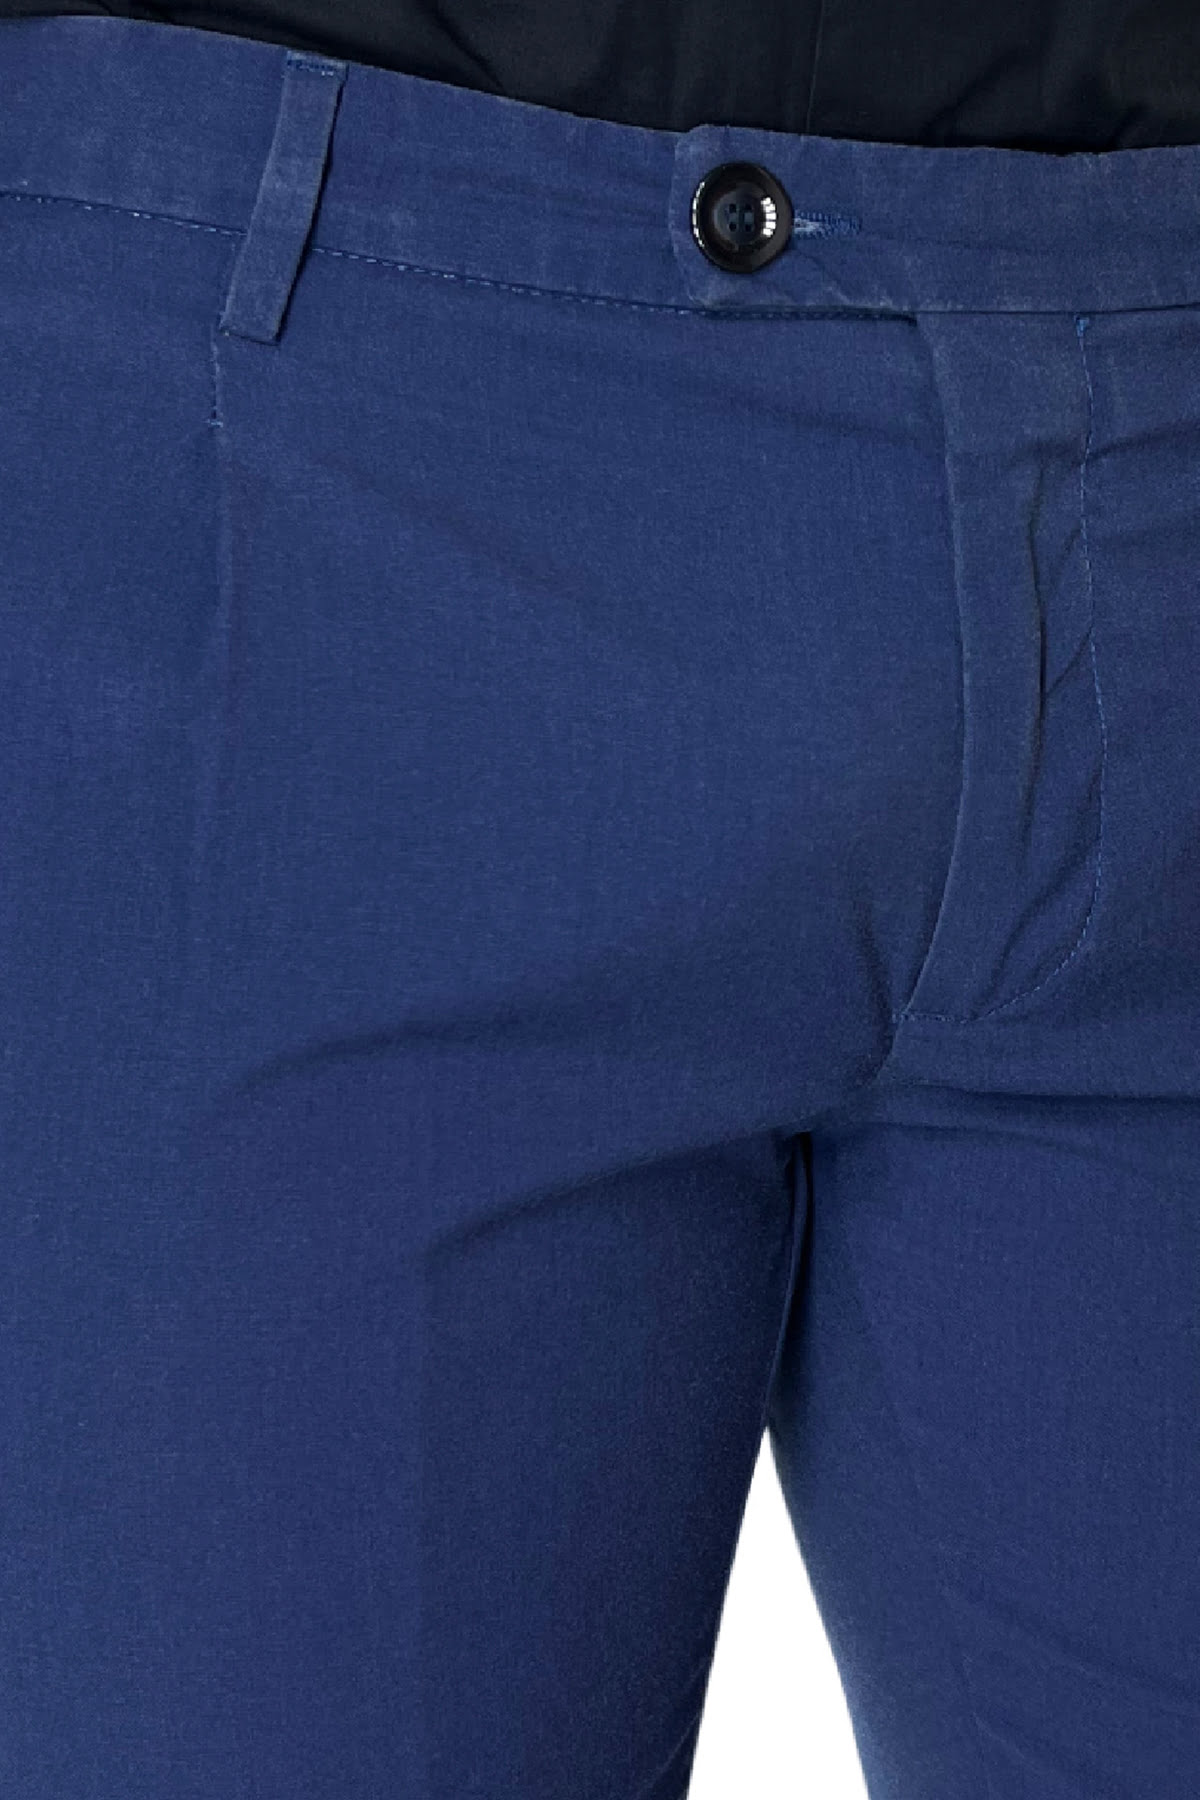 Pantalone uomo bluette in cotone tasca a filo slim fit sartoriale con pence